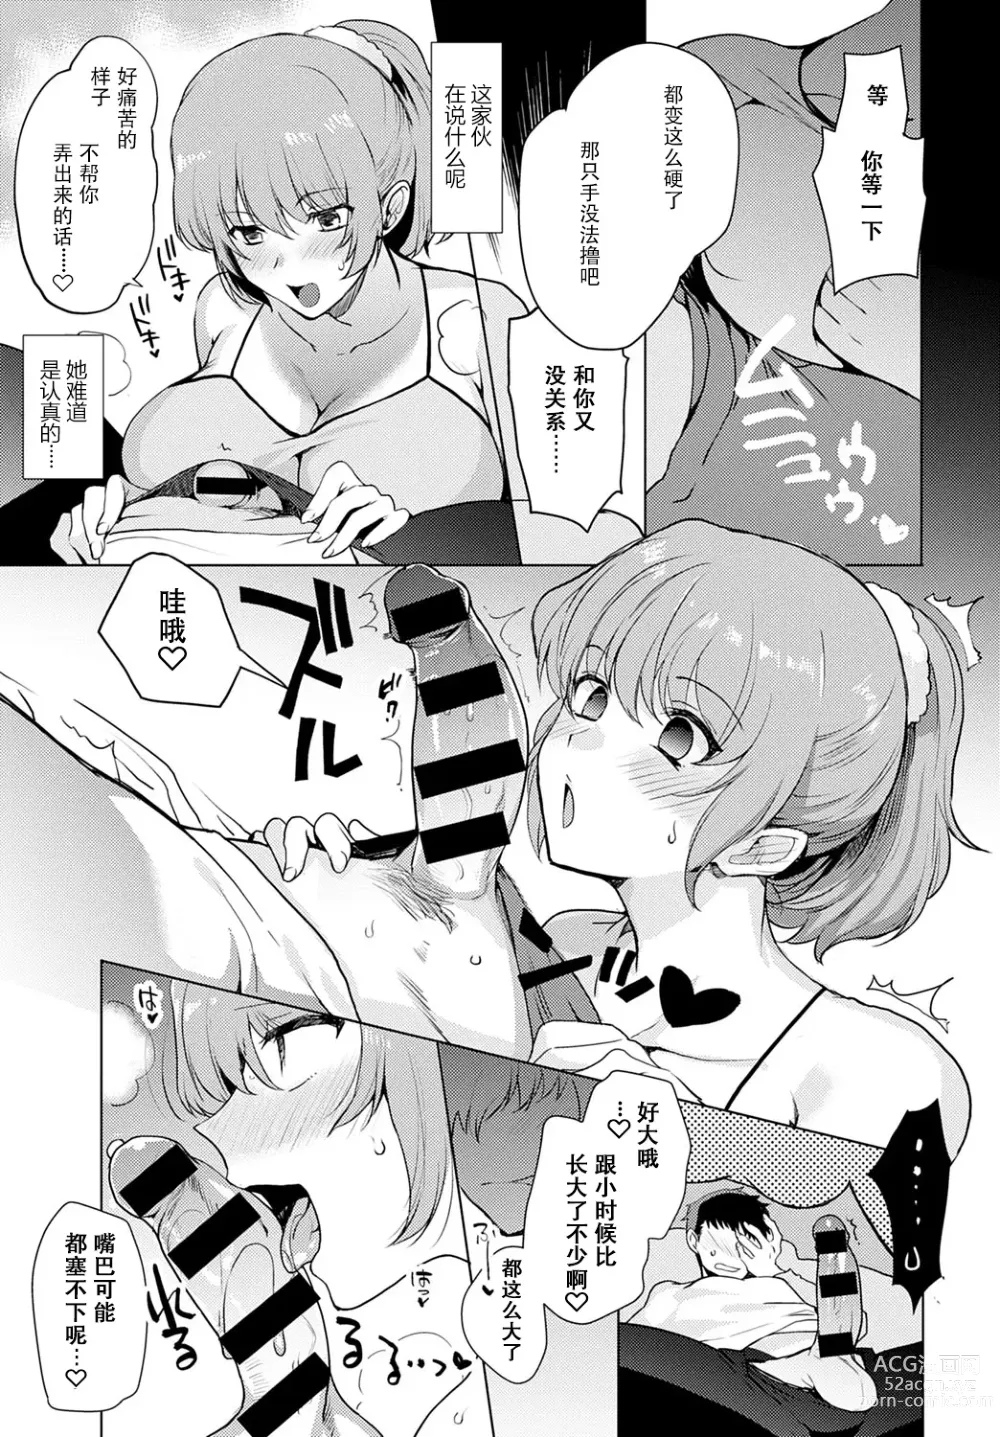 Page 7 of manga Kyoudai Switch Siblings Switch